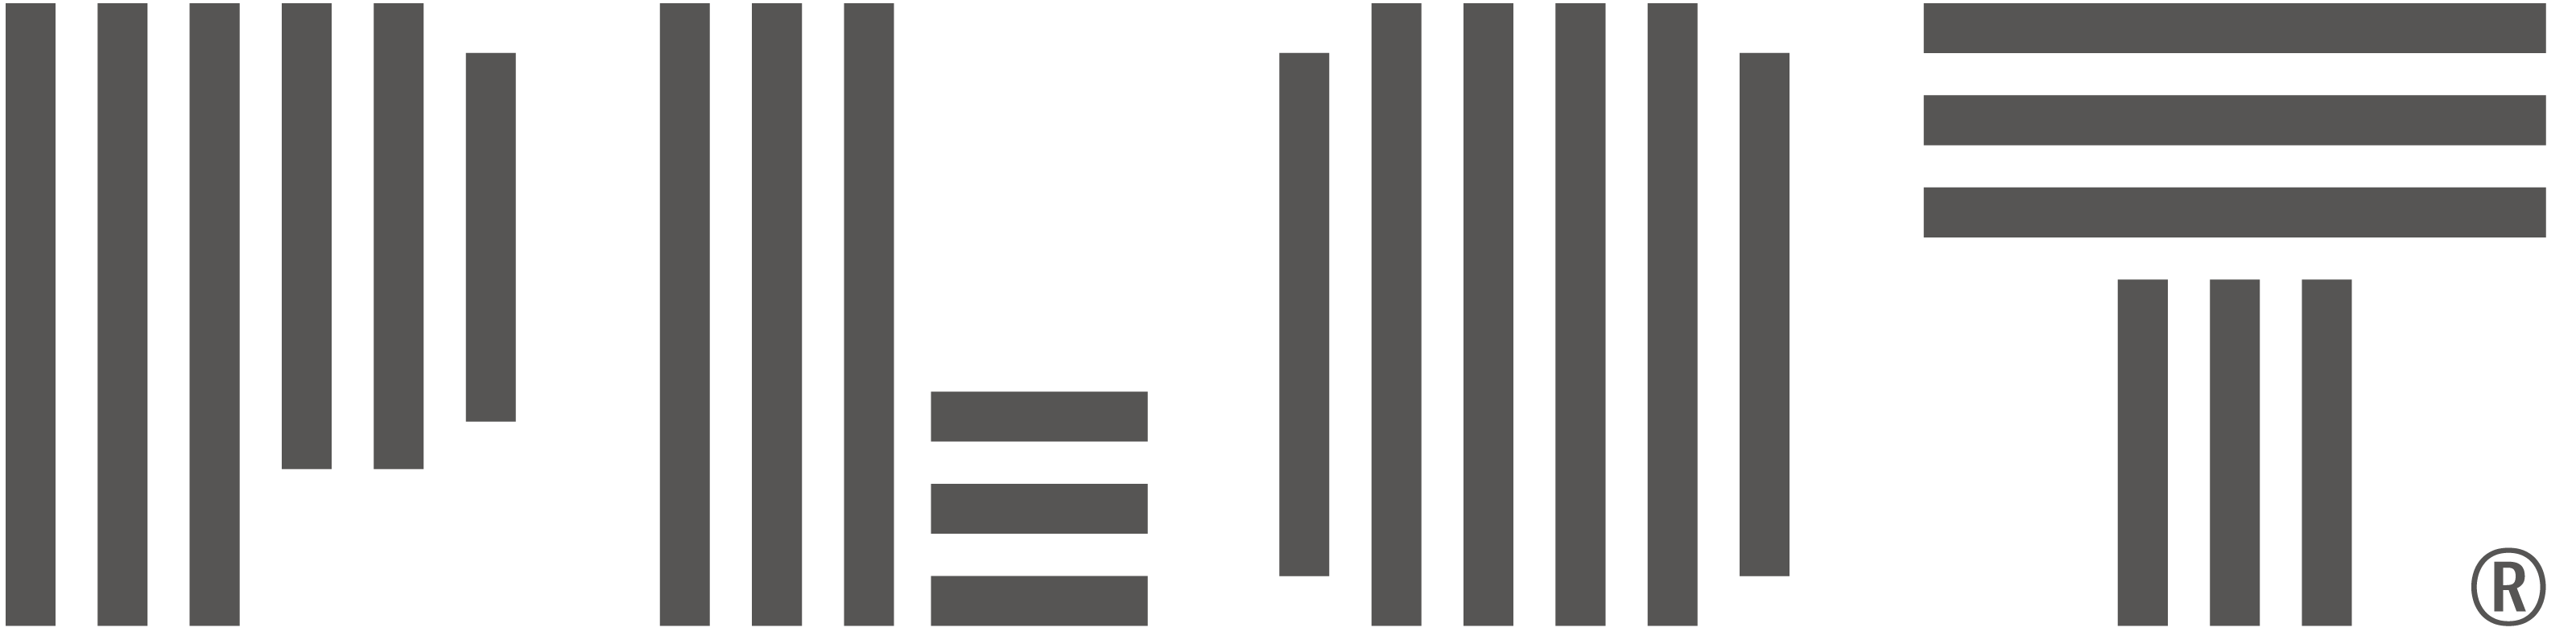 PLOT logo